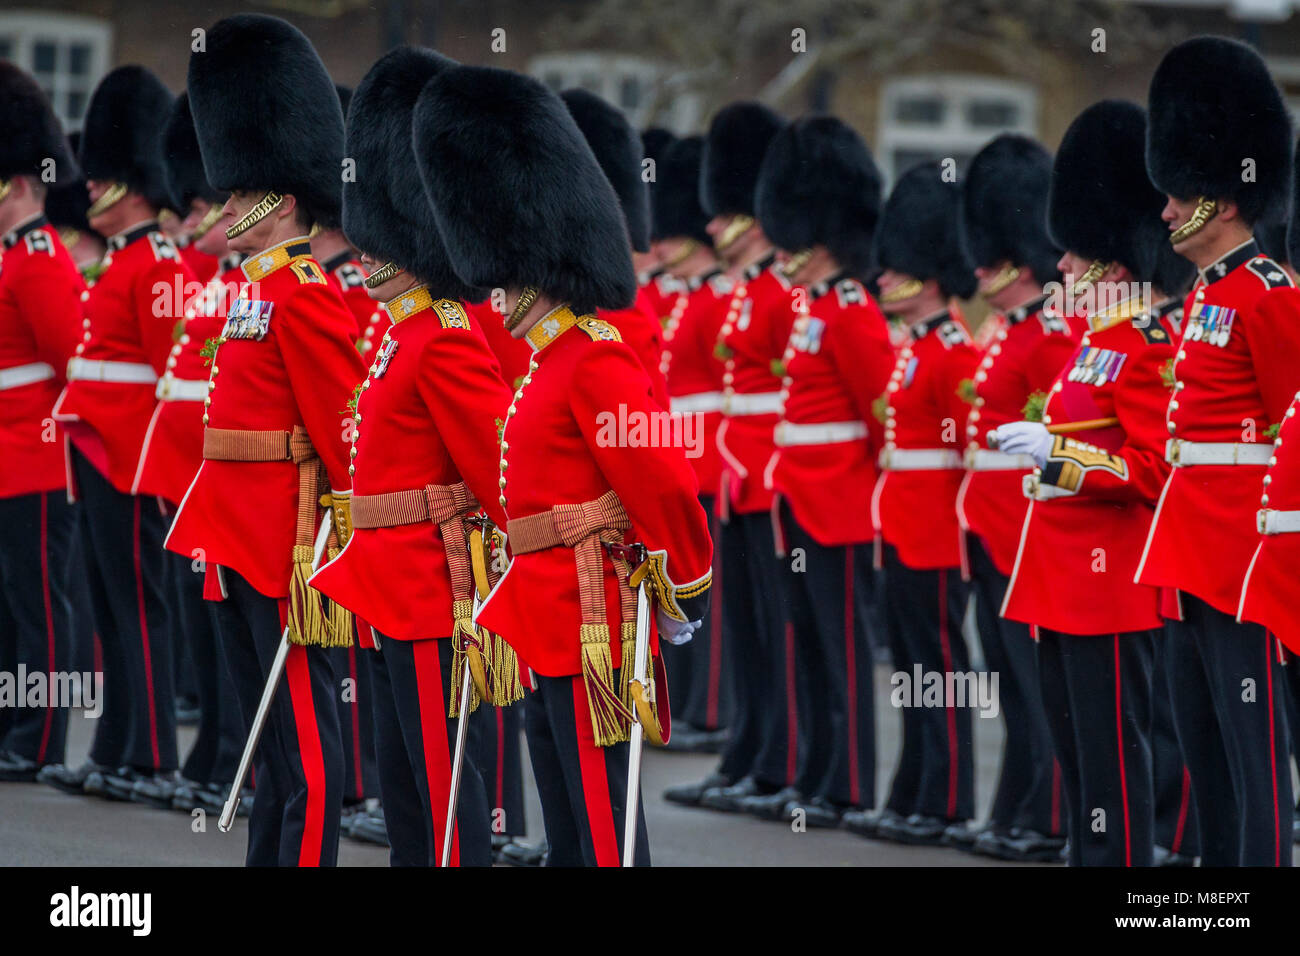 Londres, Royaume-Uni, 17 mars 2018. Le duc de Cambridge, le colonel de l'Irish Guards, accompagnée de la duchesse de Cambridge, a visité le 1er bataillon Irish Guards à leur parade de la Saint Patrick. Crédit : Guy Bell/Alamy Live News Banque D'Images